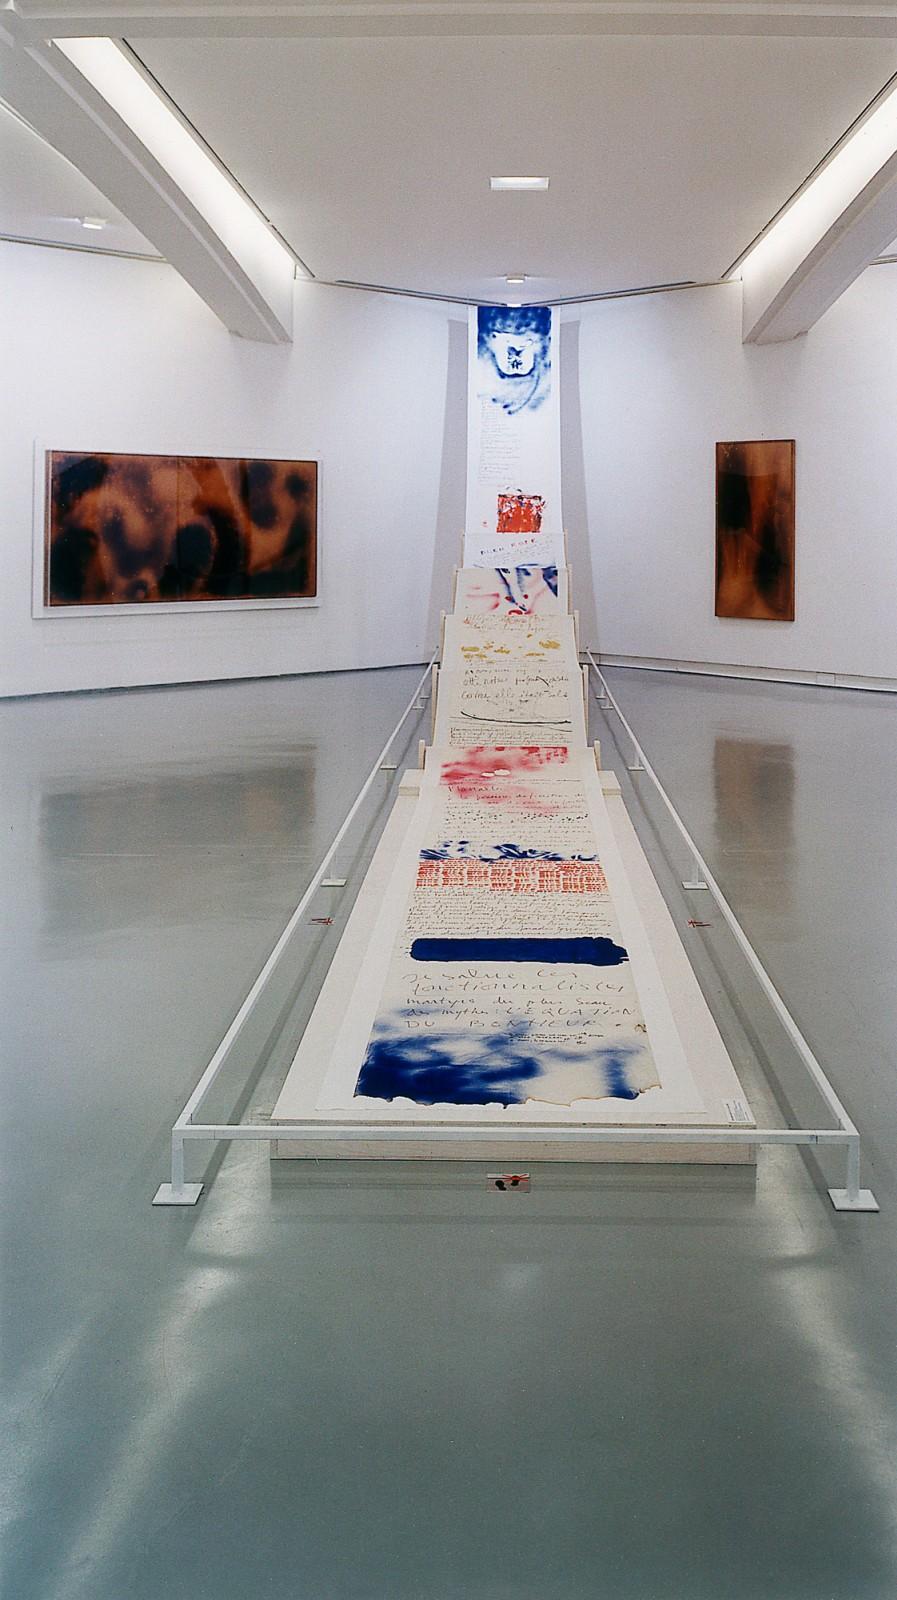 View of the exhibition, "Yves Klein, "La vie, la vie elle-même qui est l'art absolu", MAMAC - Musée d'Art Moderne et d'Art Contemporain de Nice, 2000